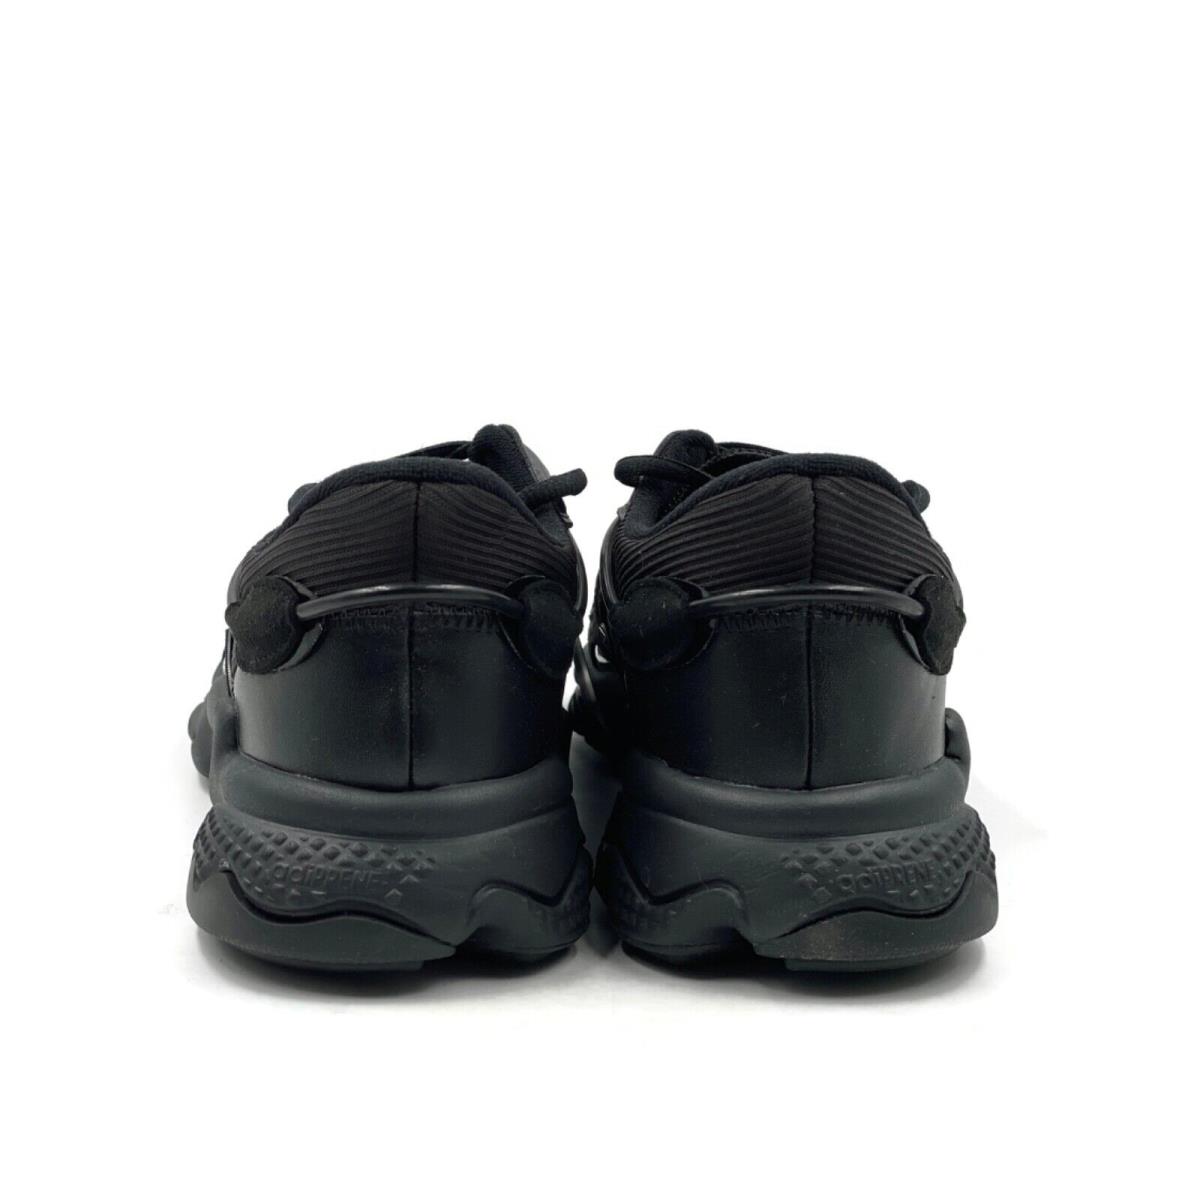 Adidas shoes Ozweego - Black 6